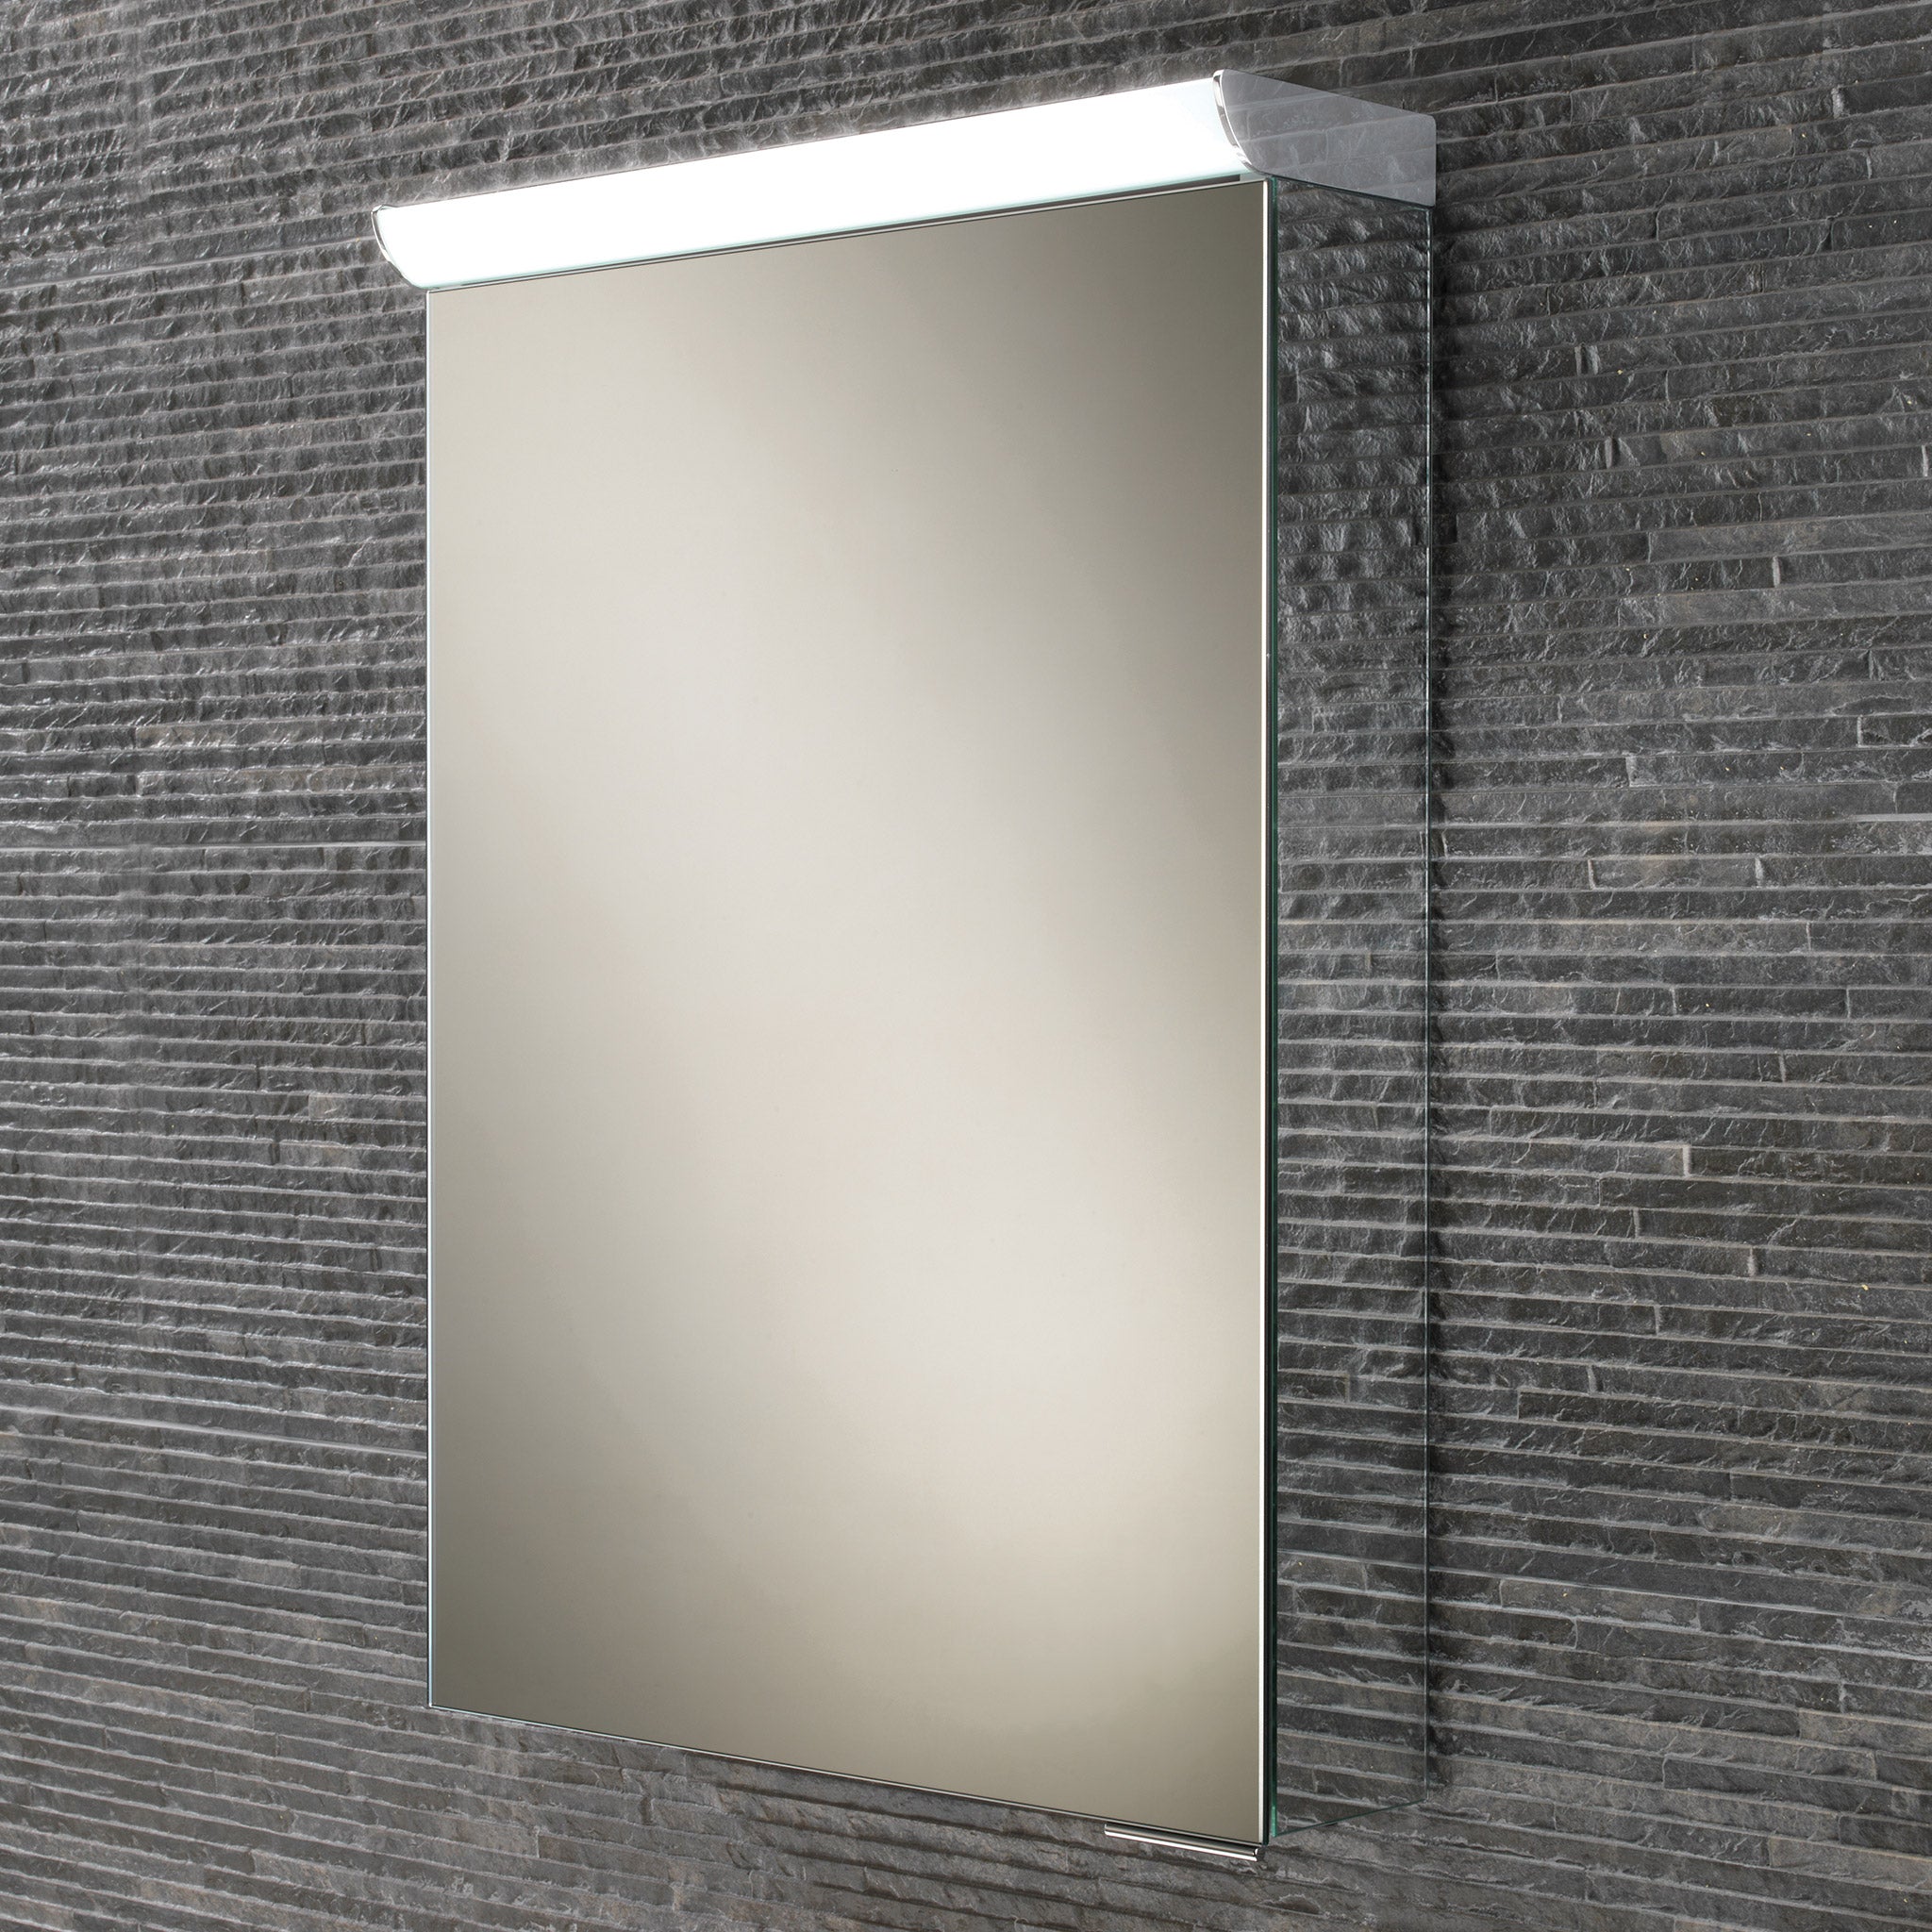 HiB Spectrum LED Aluminium Mirror Cabinet 50 x 70cm